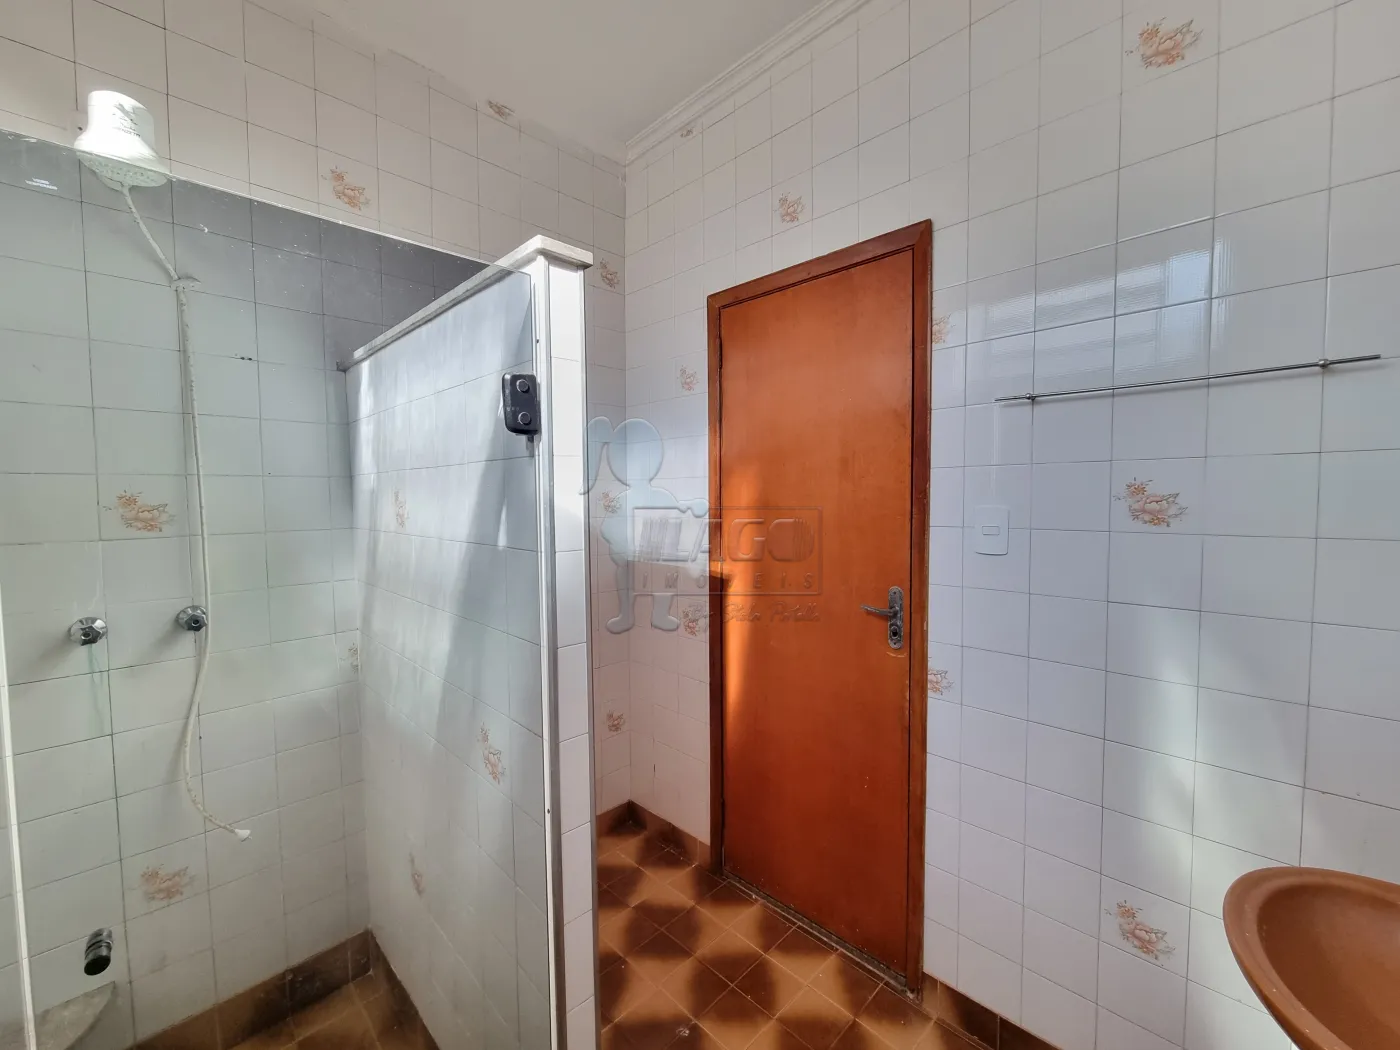 Comprar Casa / Padrão em Ribeirão Preto R$ 275.000,00 - Foto 15